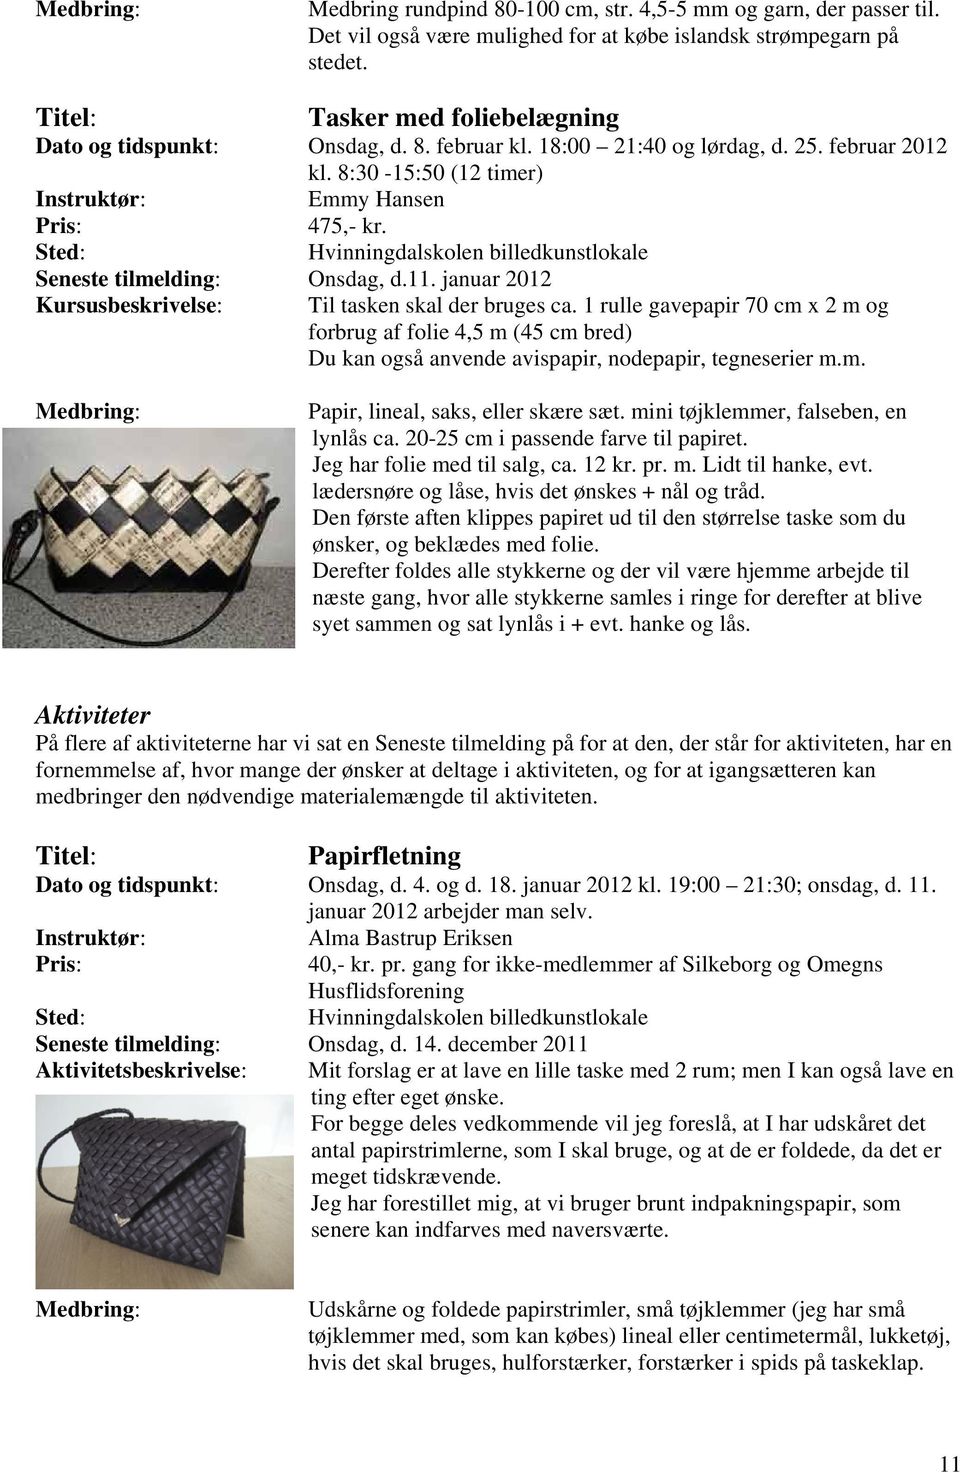 Sted: Hvinningdalskolen billedkunstlokale Seneste tilmelding: Onsdag, d.11. januar 2012 Kursusbeskrivelse: Til tasken skal der bruges ca.